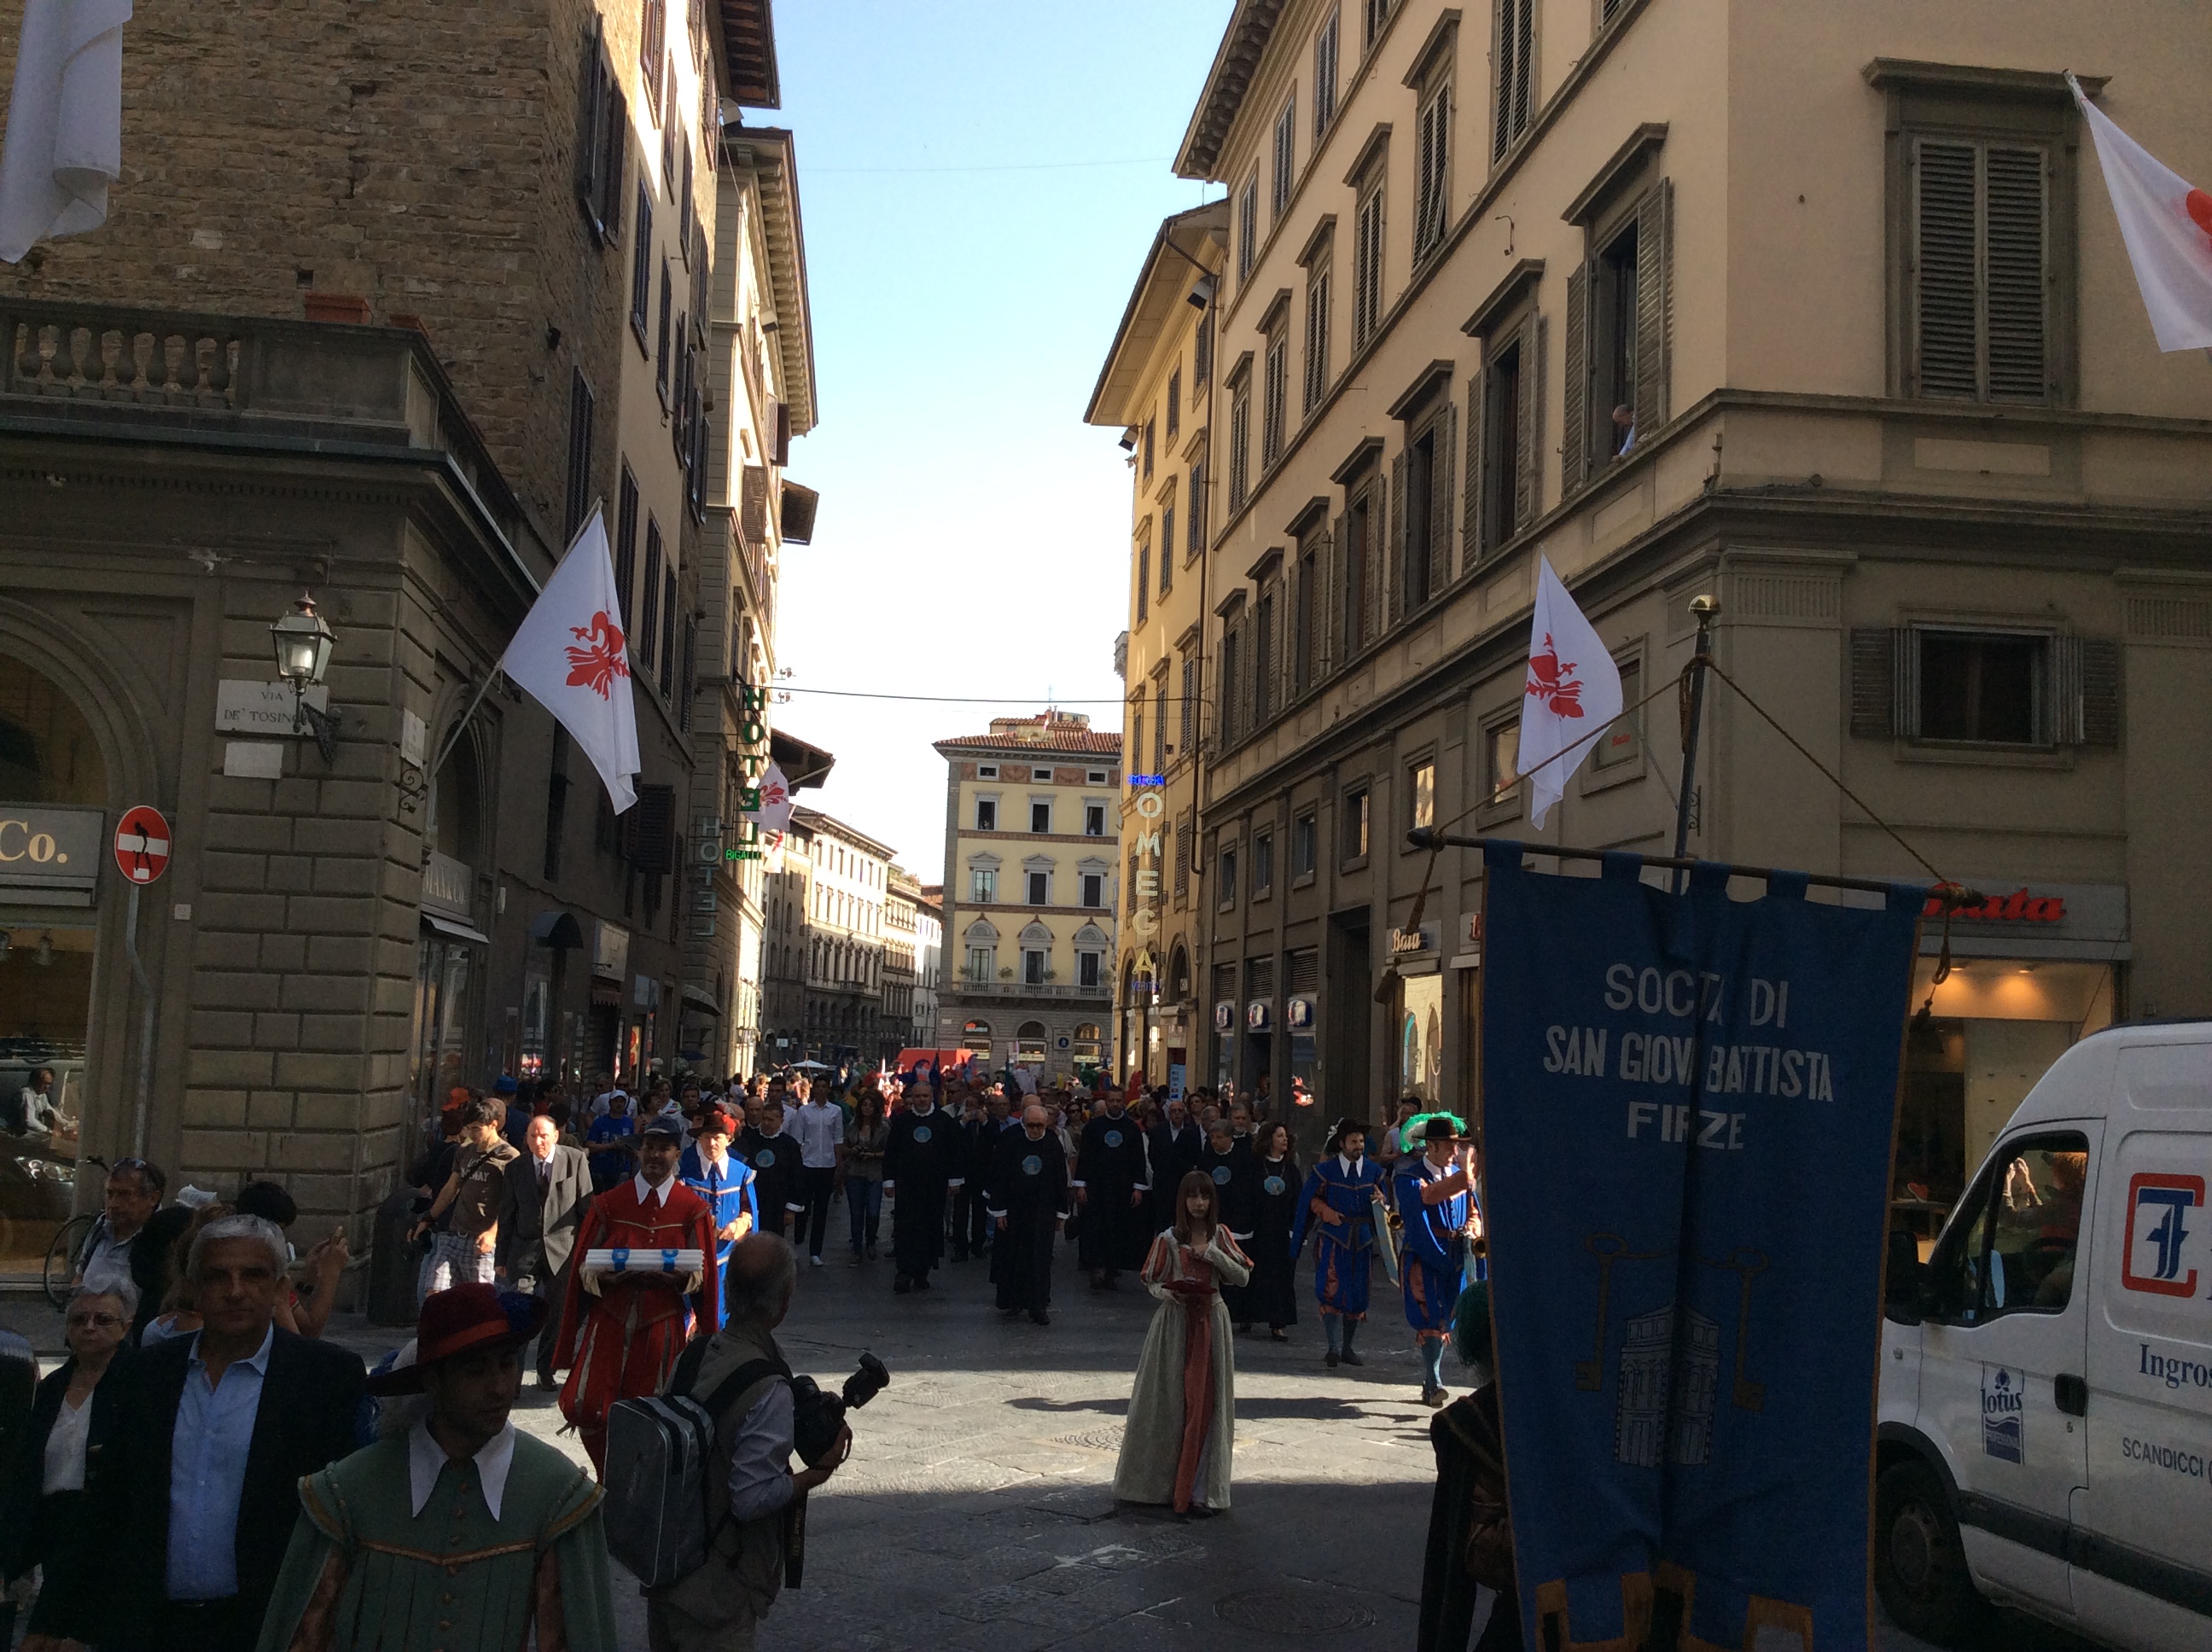 Festa patrono San Giovanni – foto Giornalista Franco Mariani (16)